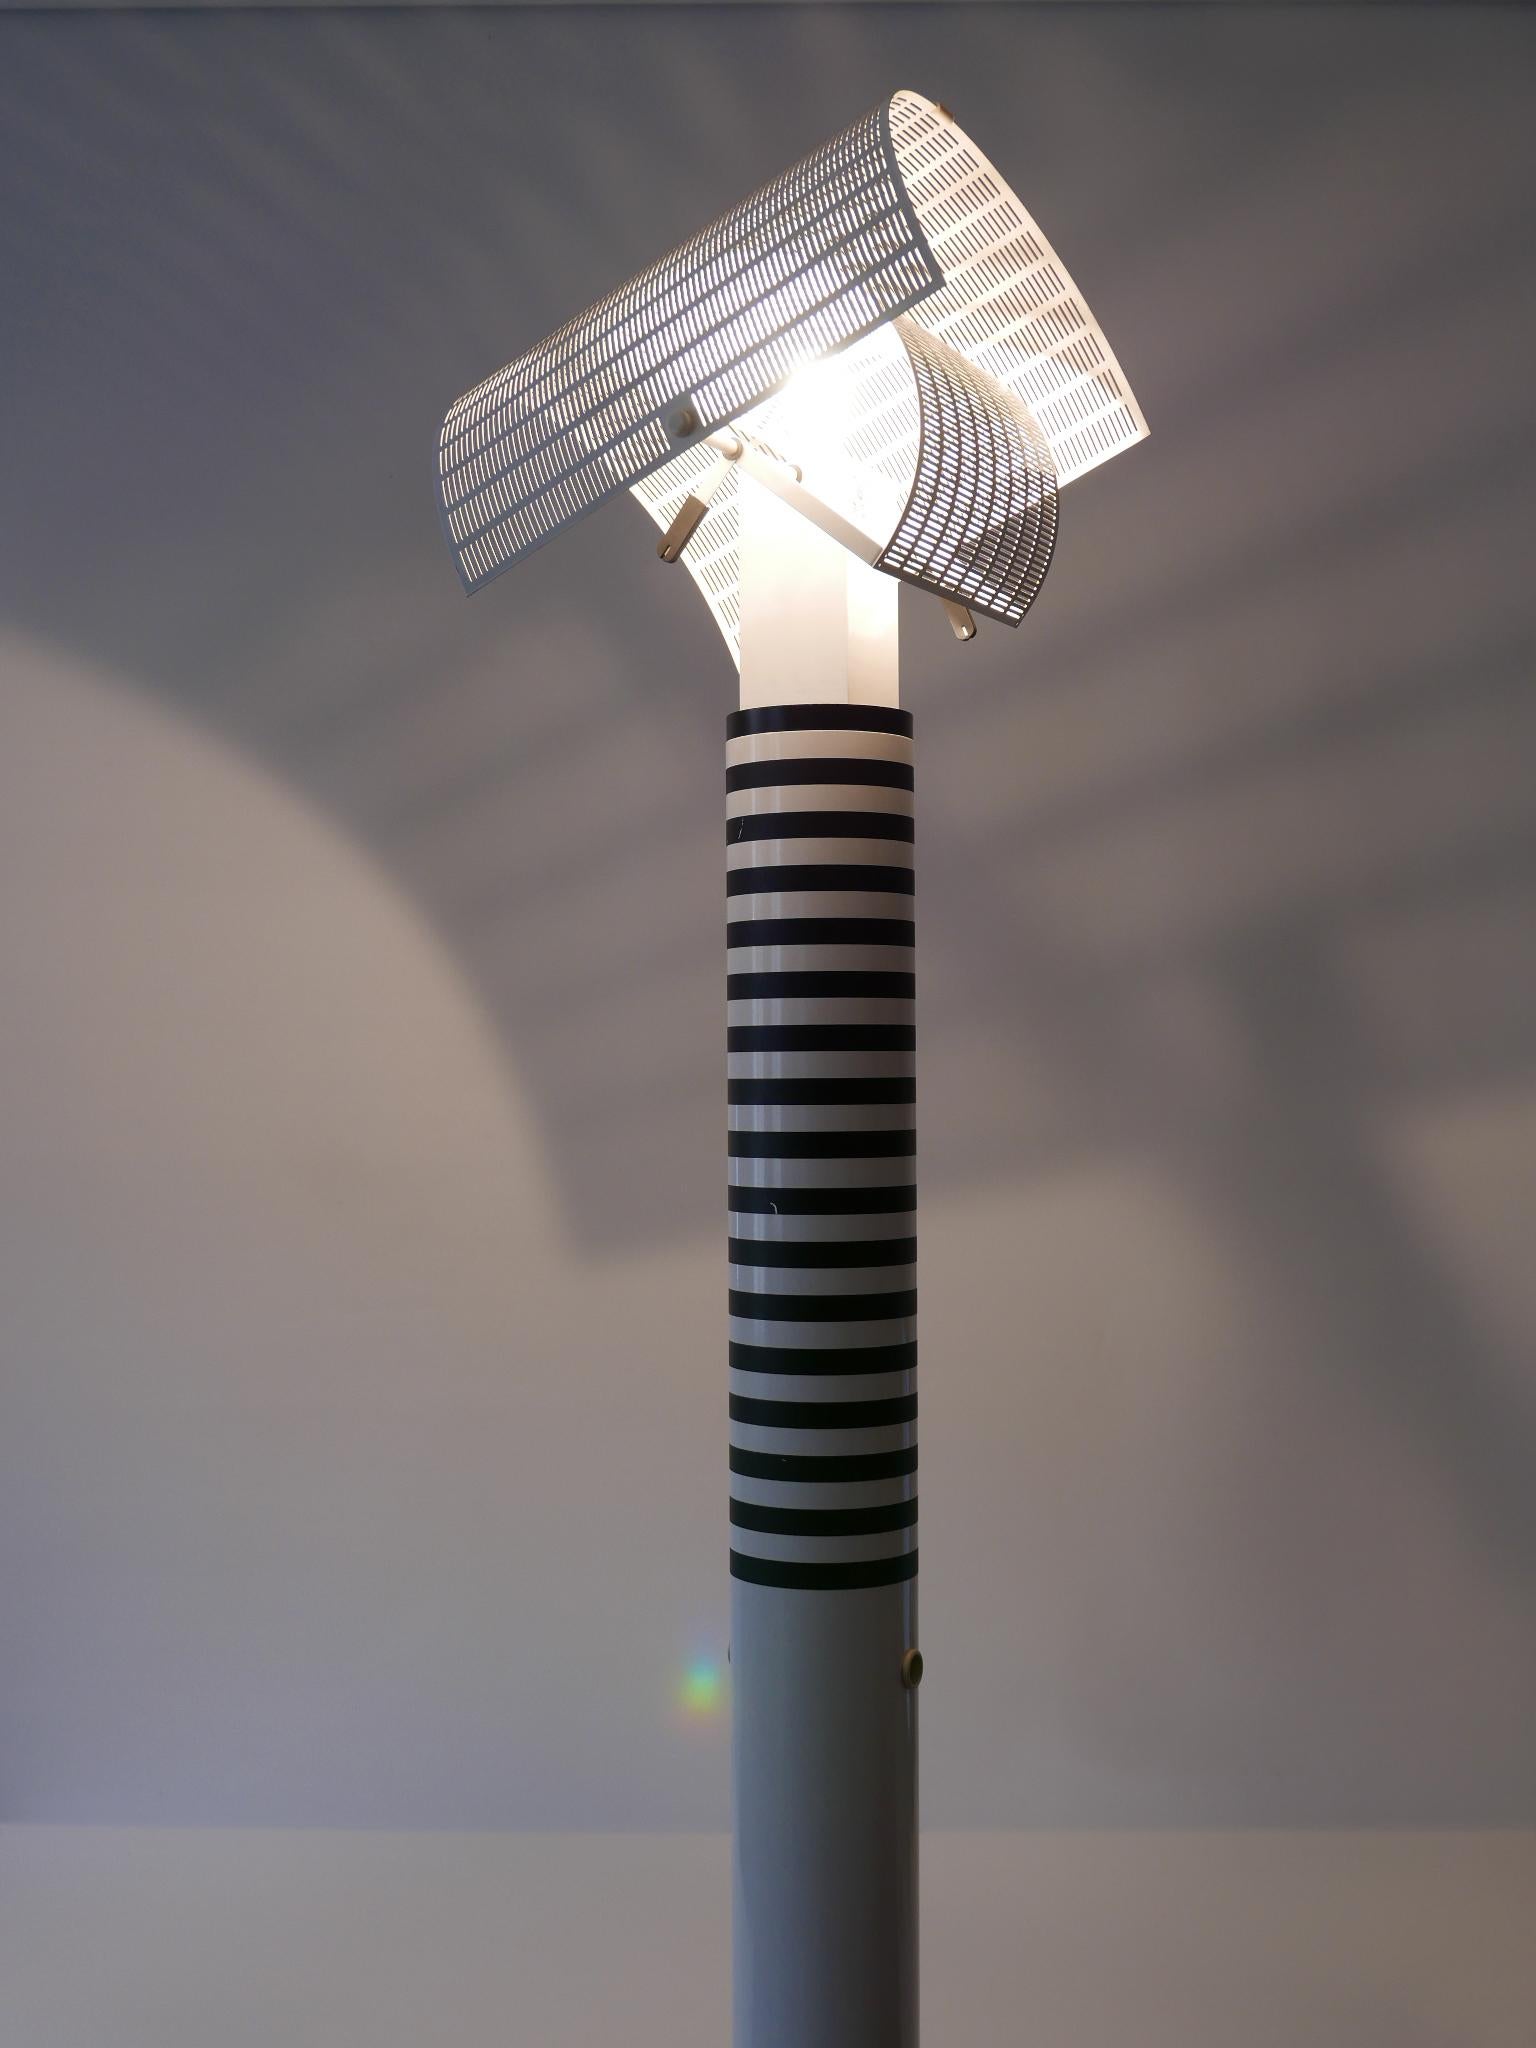 Monumental Postmodern Shogun Floor Lamp by Mario Botta for Artemide Italy 1980s For Sale 1